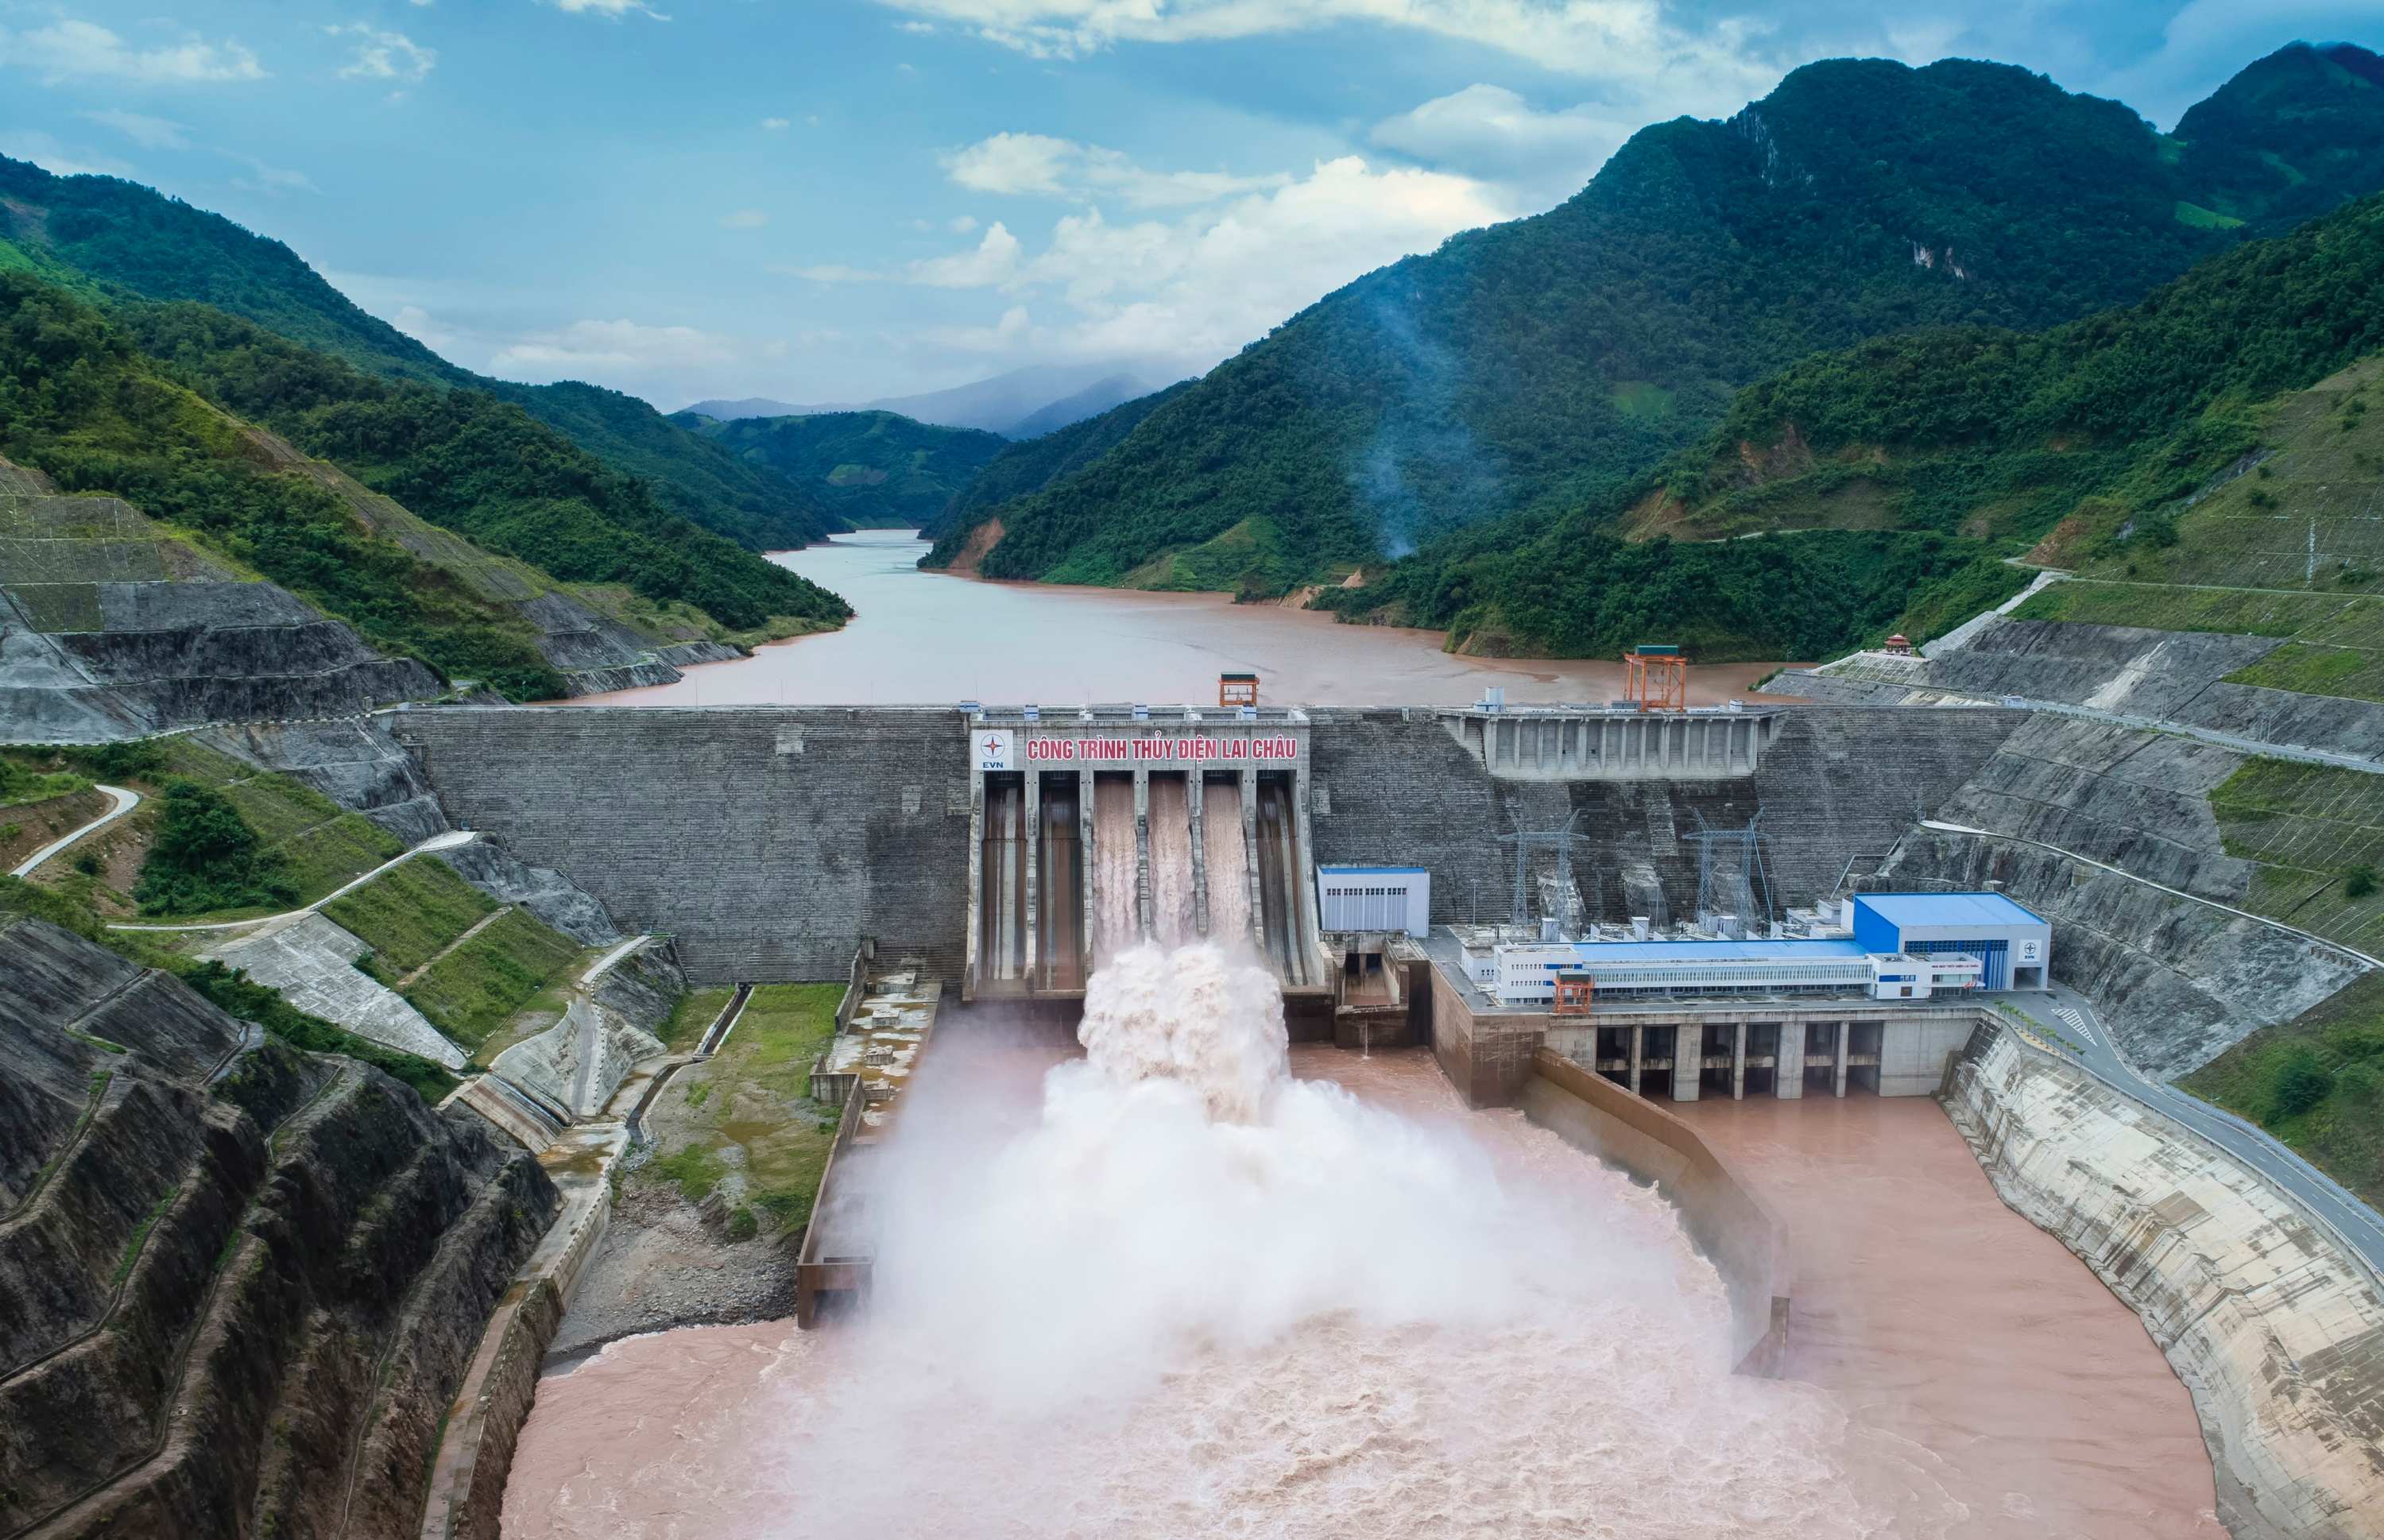 Tính đến ngày 28/8, hồ thủy điện Lai Châu đã xả tràn liên tiếp 22 ngày và chưa có thông báo dừng xả.